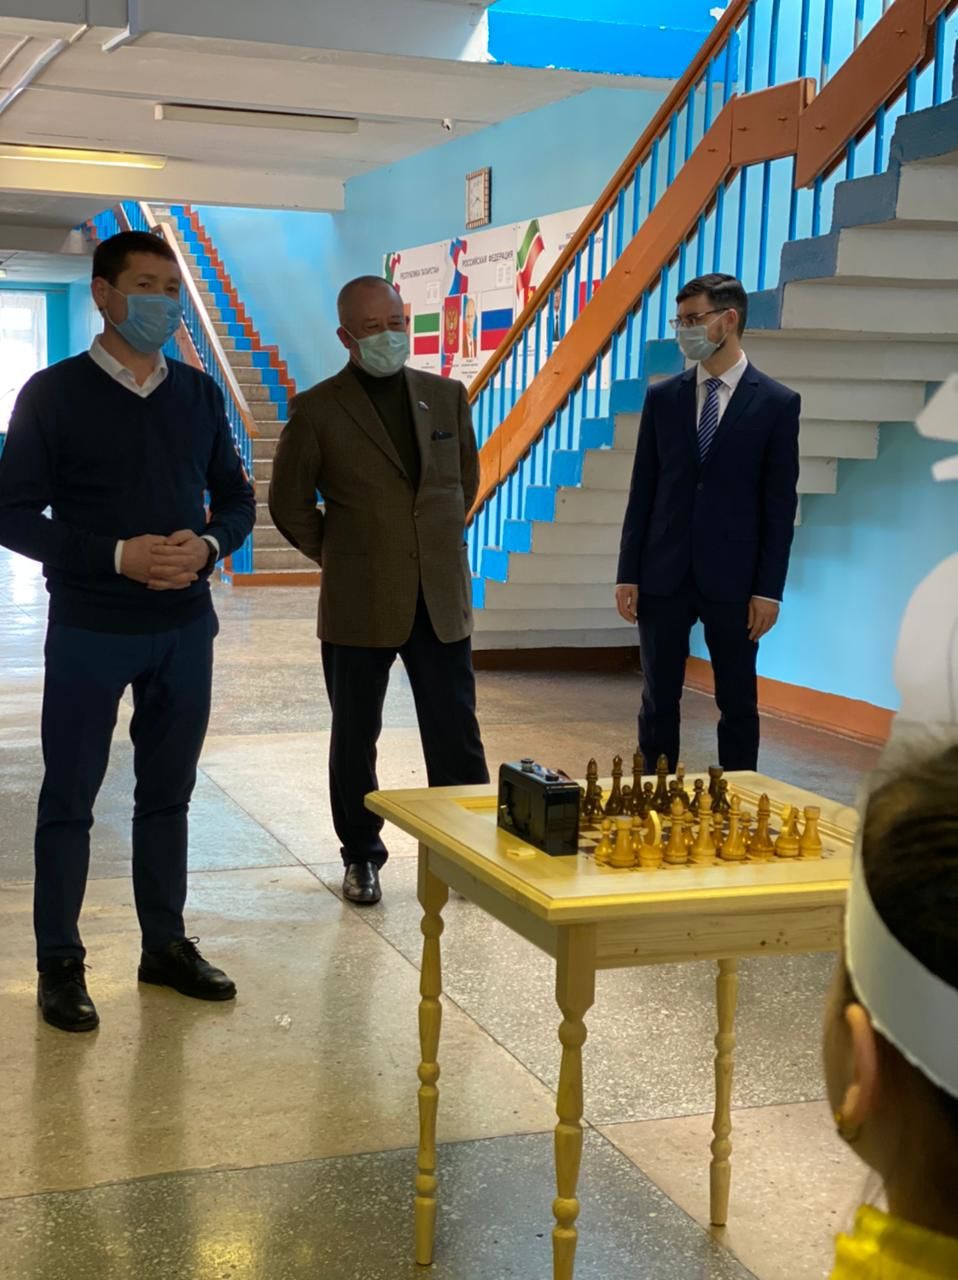 Старошигалеевской средней школе подарили набор шахматных столов